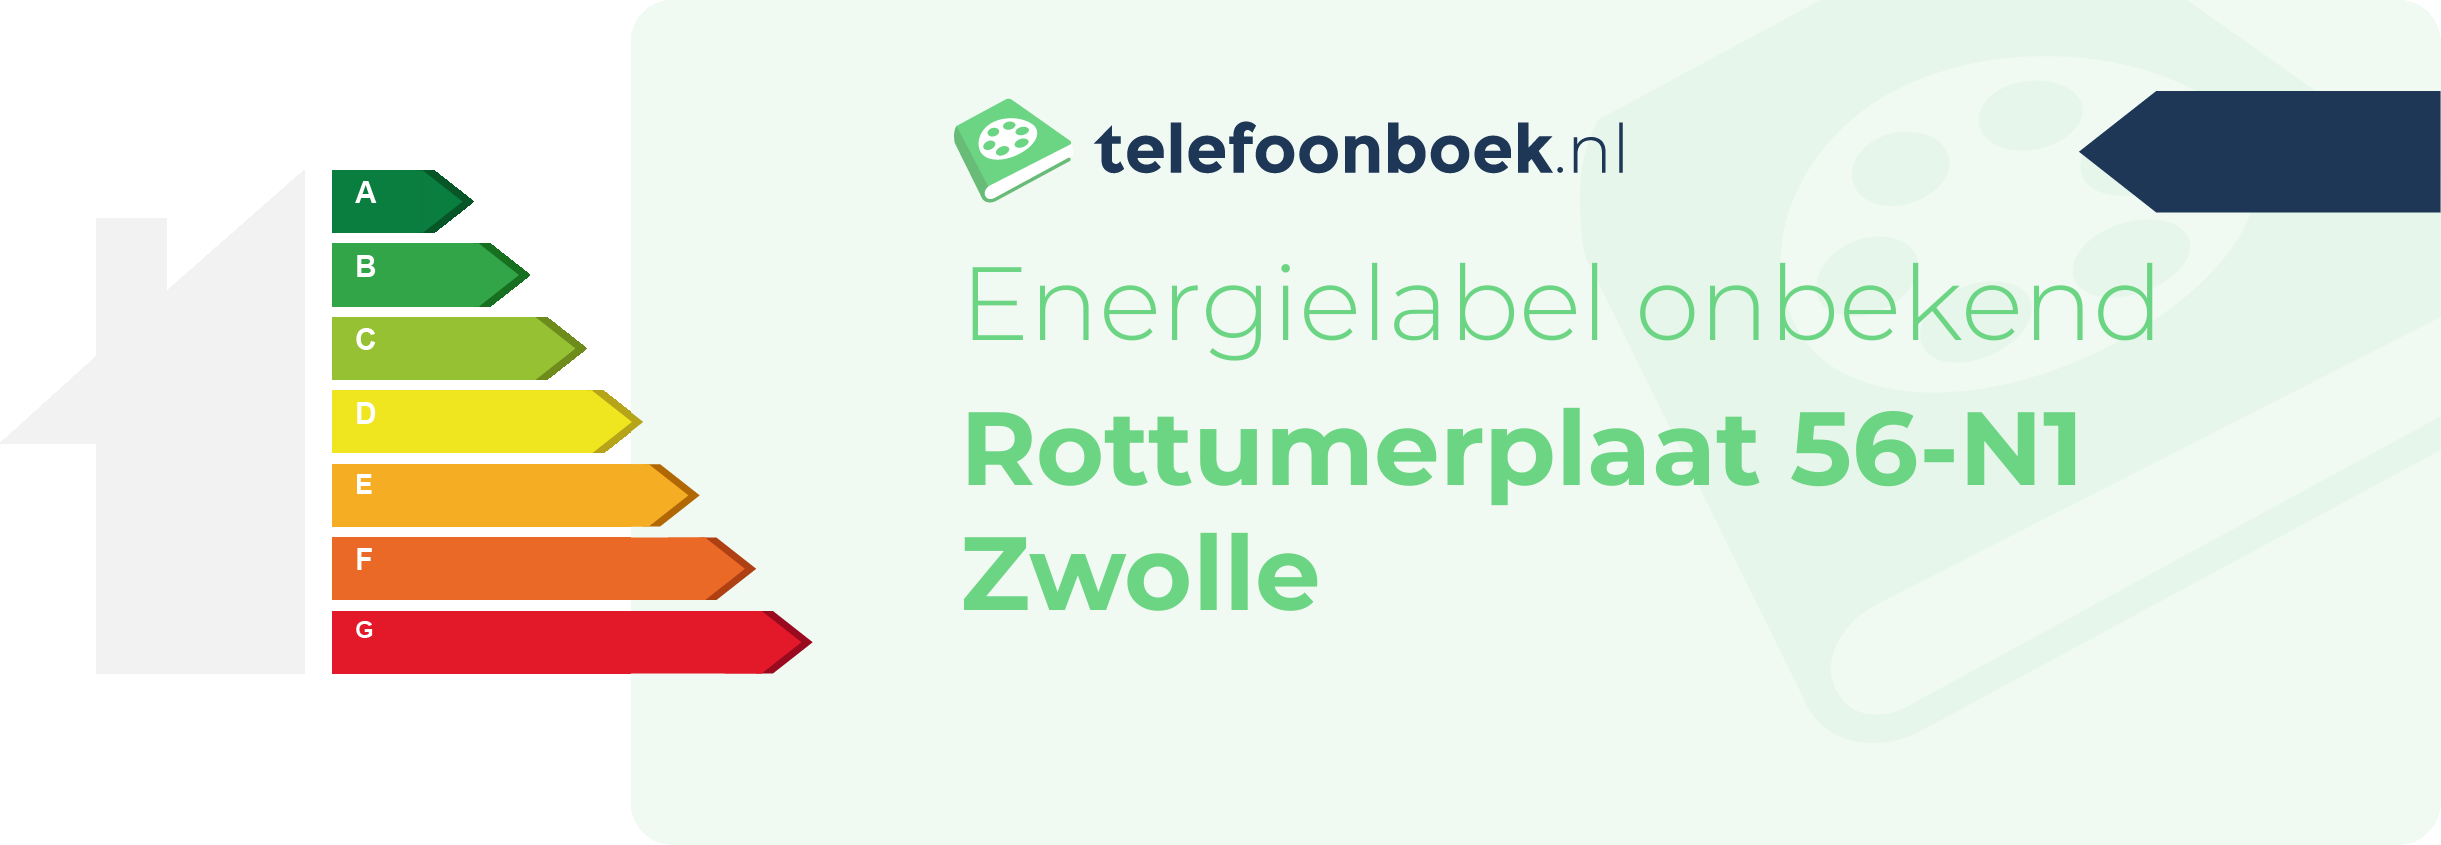 Energielabel Rottumerplaat 56-N1 Zwolle